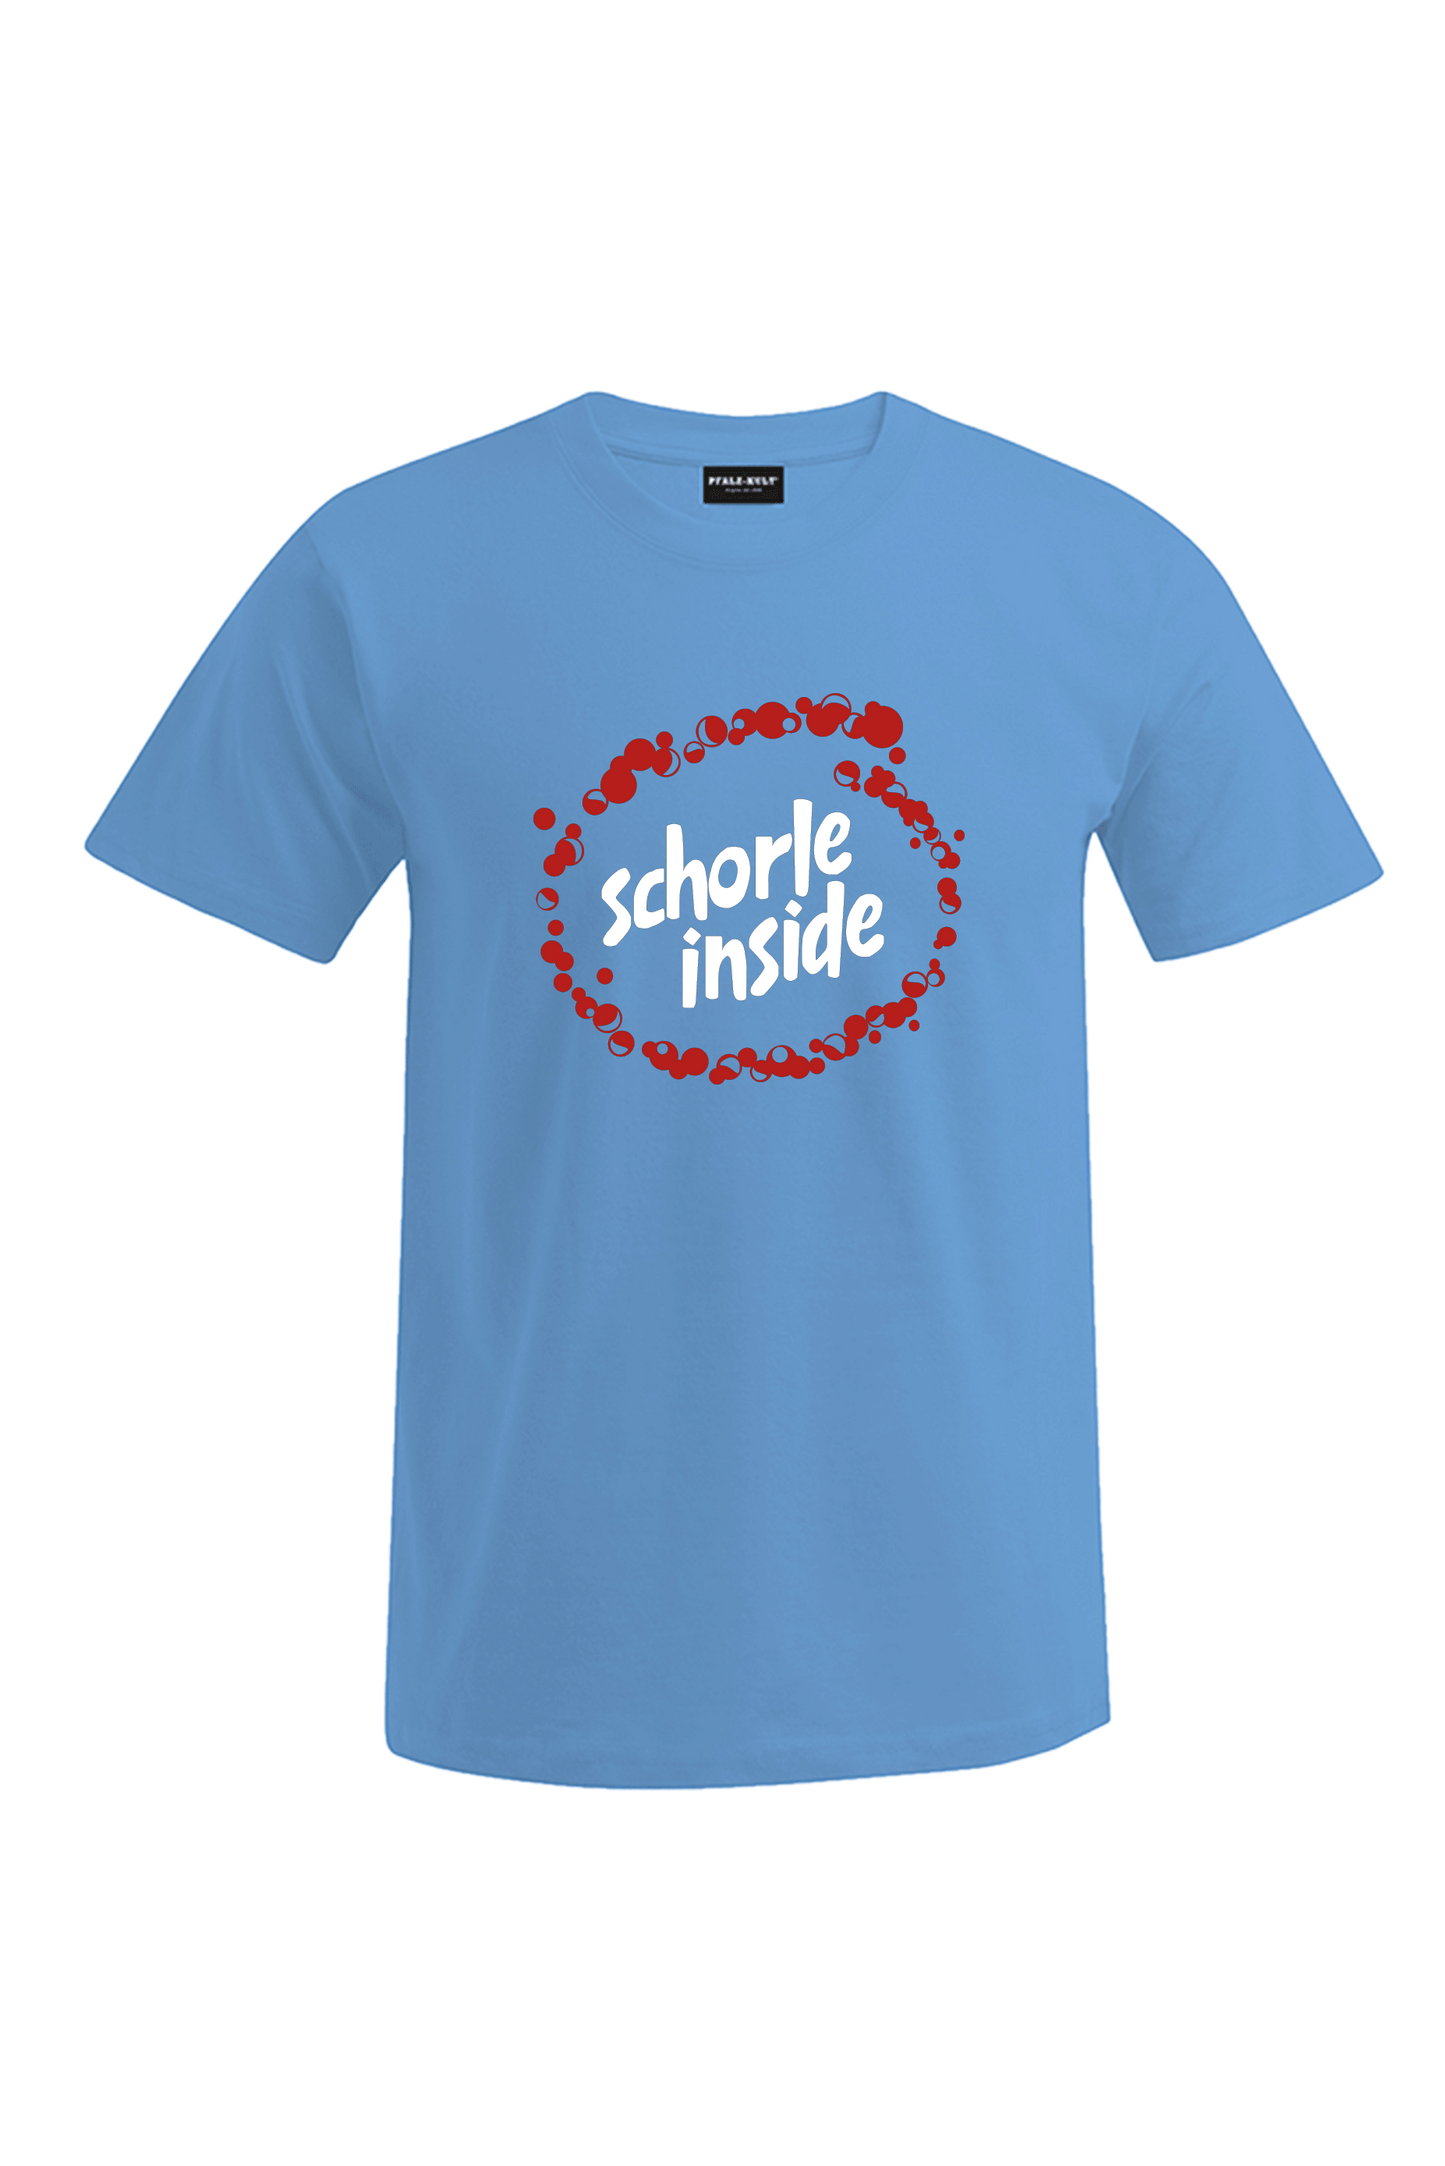 Schorle inside - Männer T-Shirt - Unisex